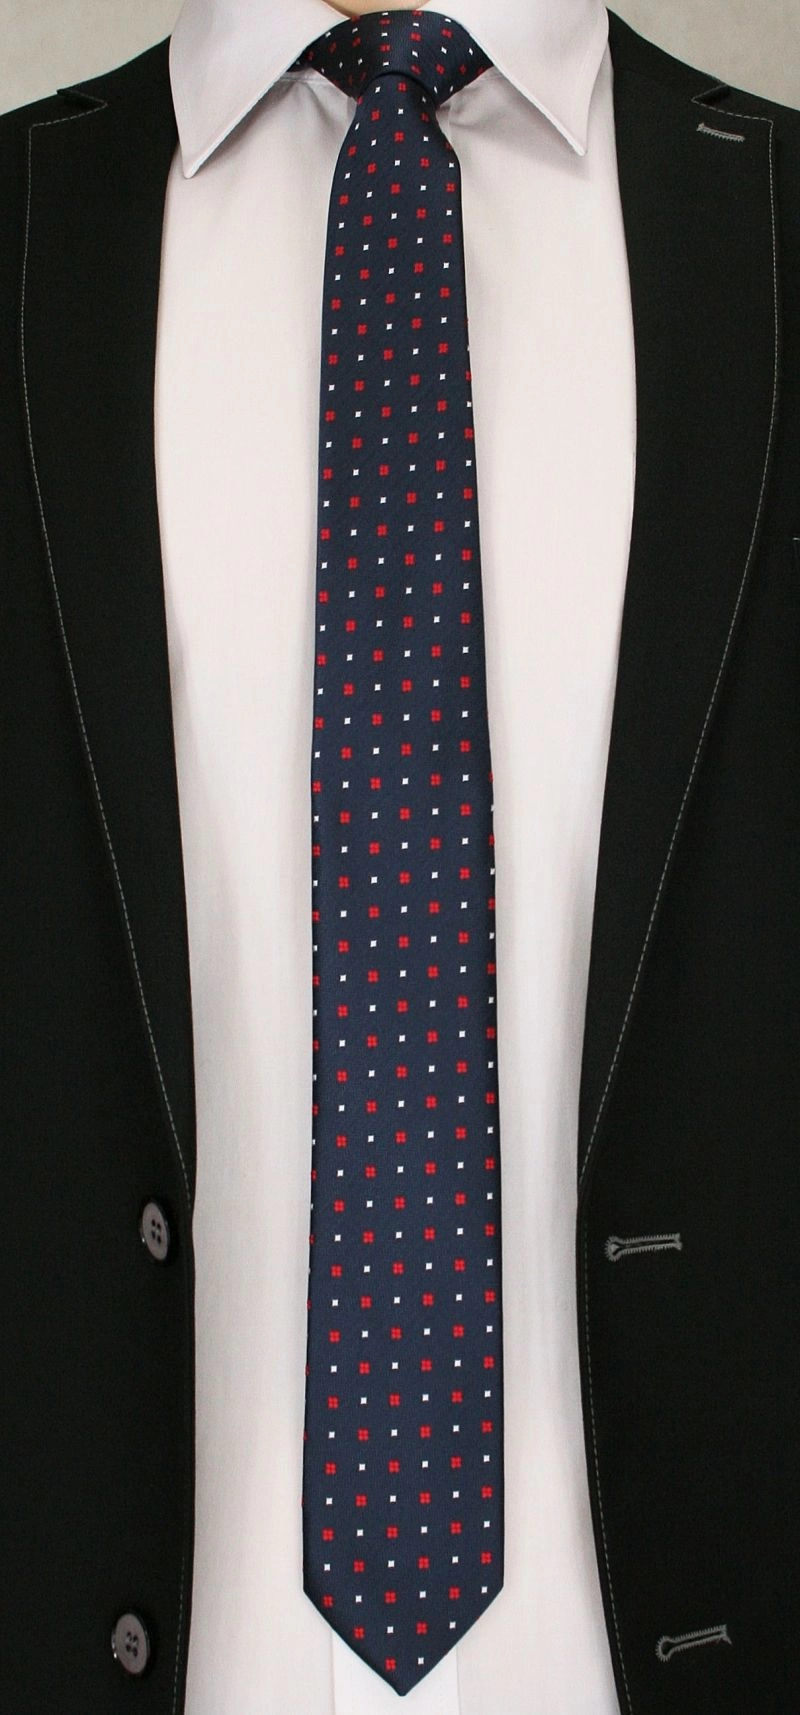 Krawat Męski w Czerwono-Białe Elementy, Kwadraciki - 6 cm - Angelo di Monti